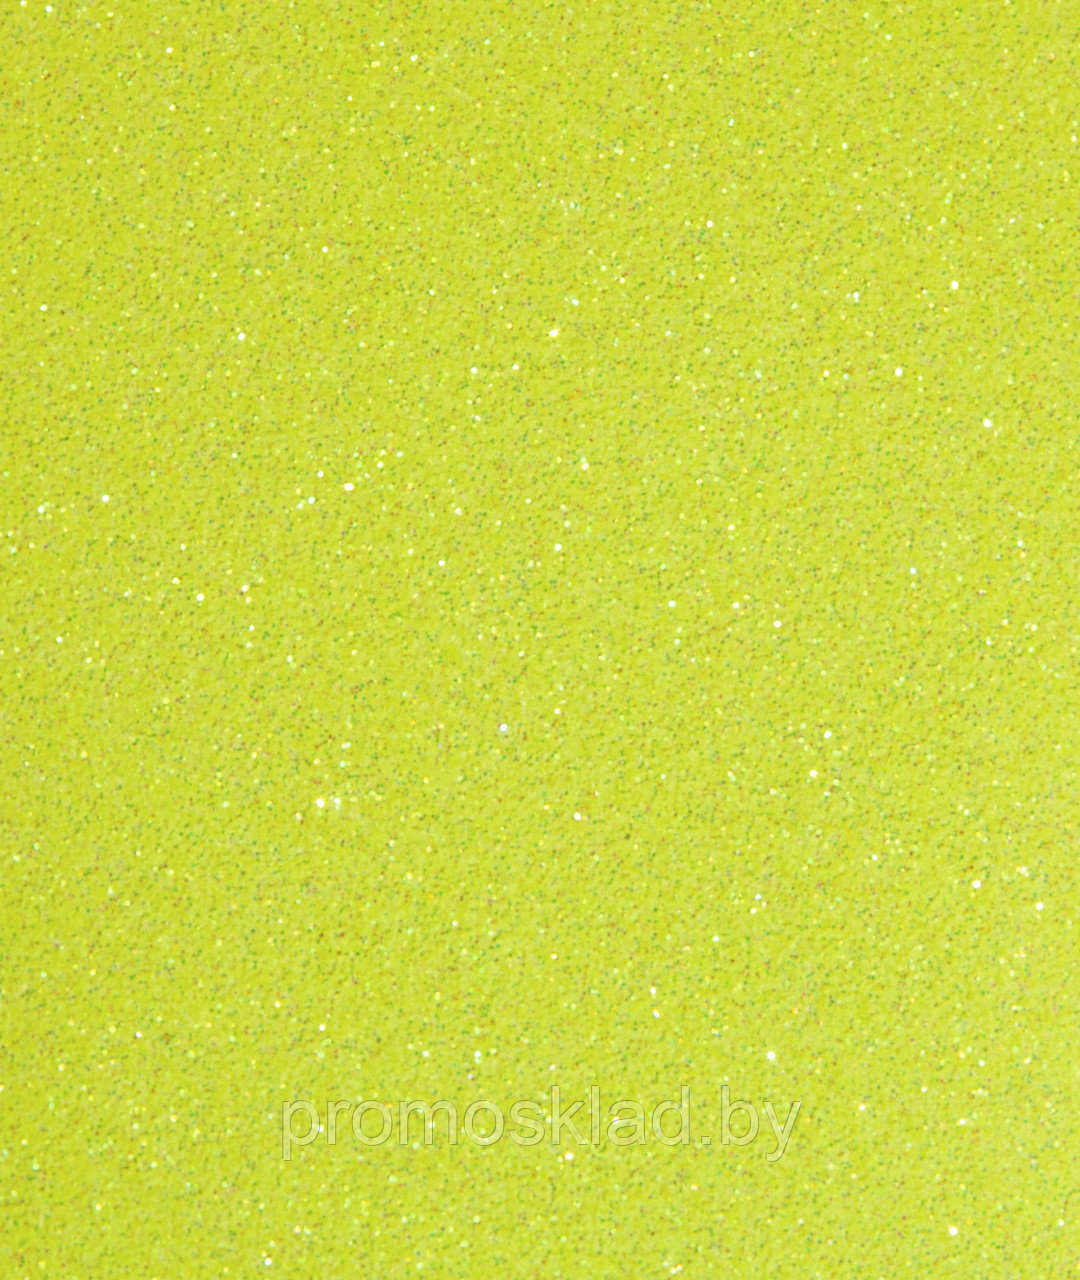 Термотрансферная пленка Glitter Neon Yellow 08 неоновый желтый (полиуретановая основа), SEF Франция, фото 1